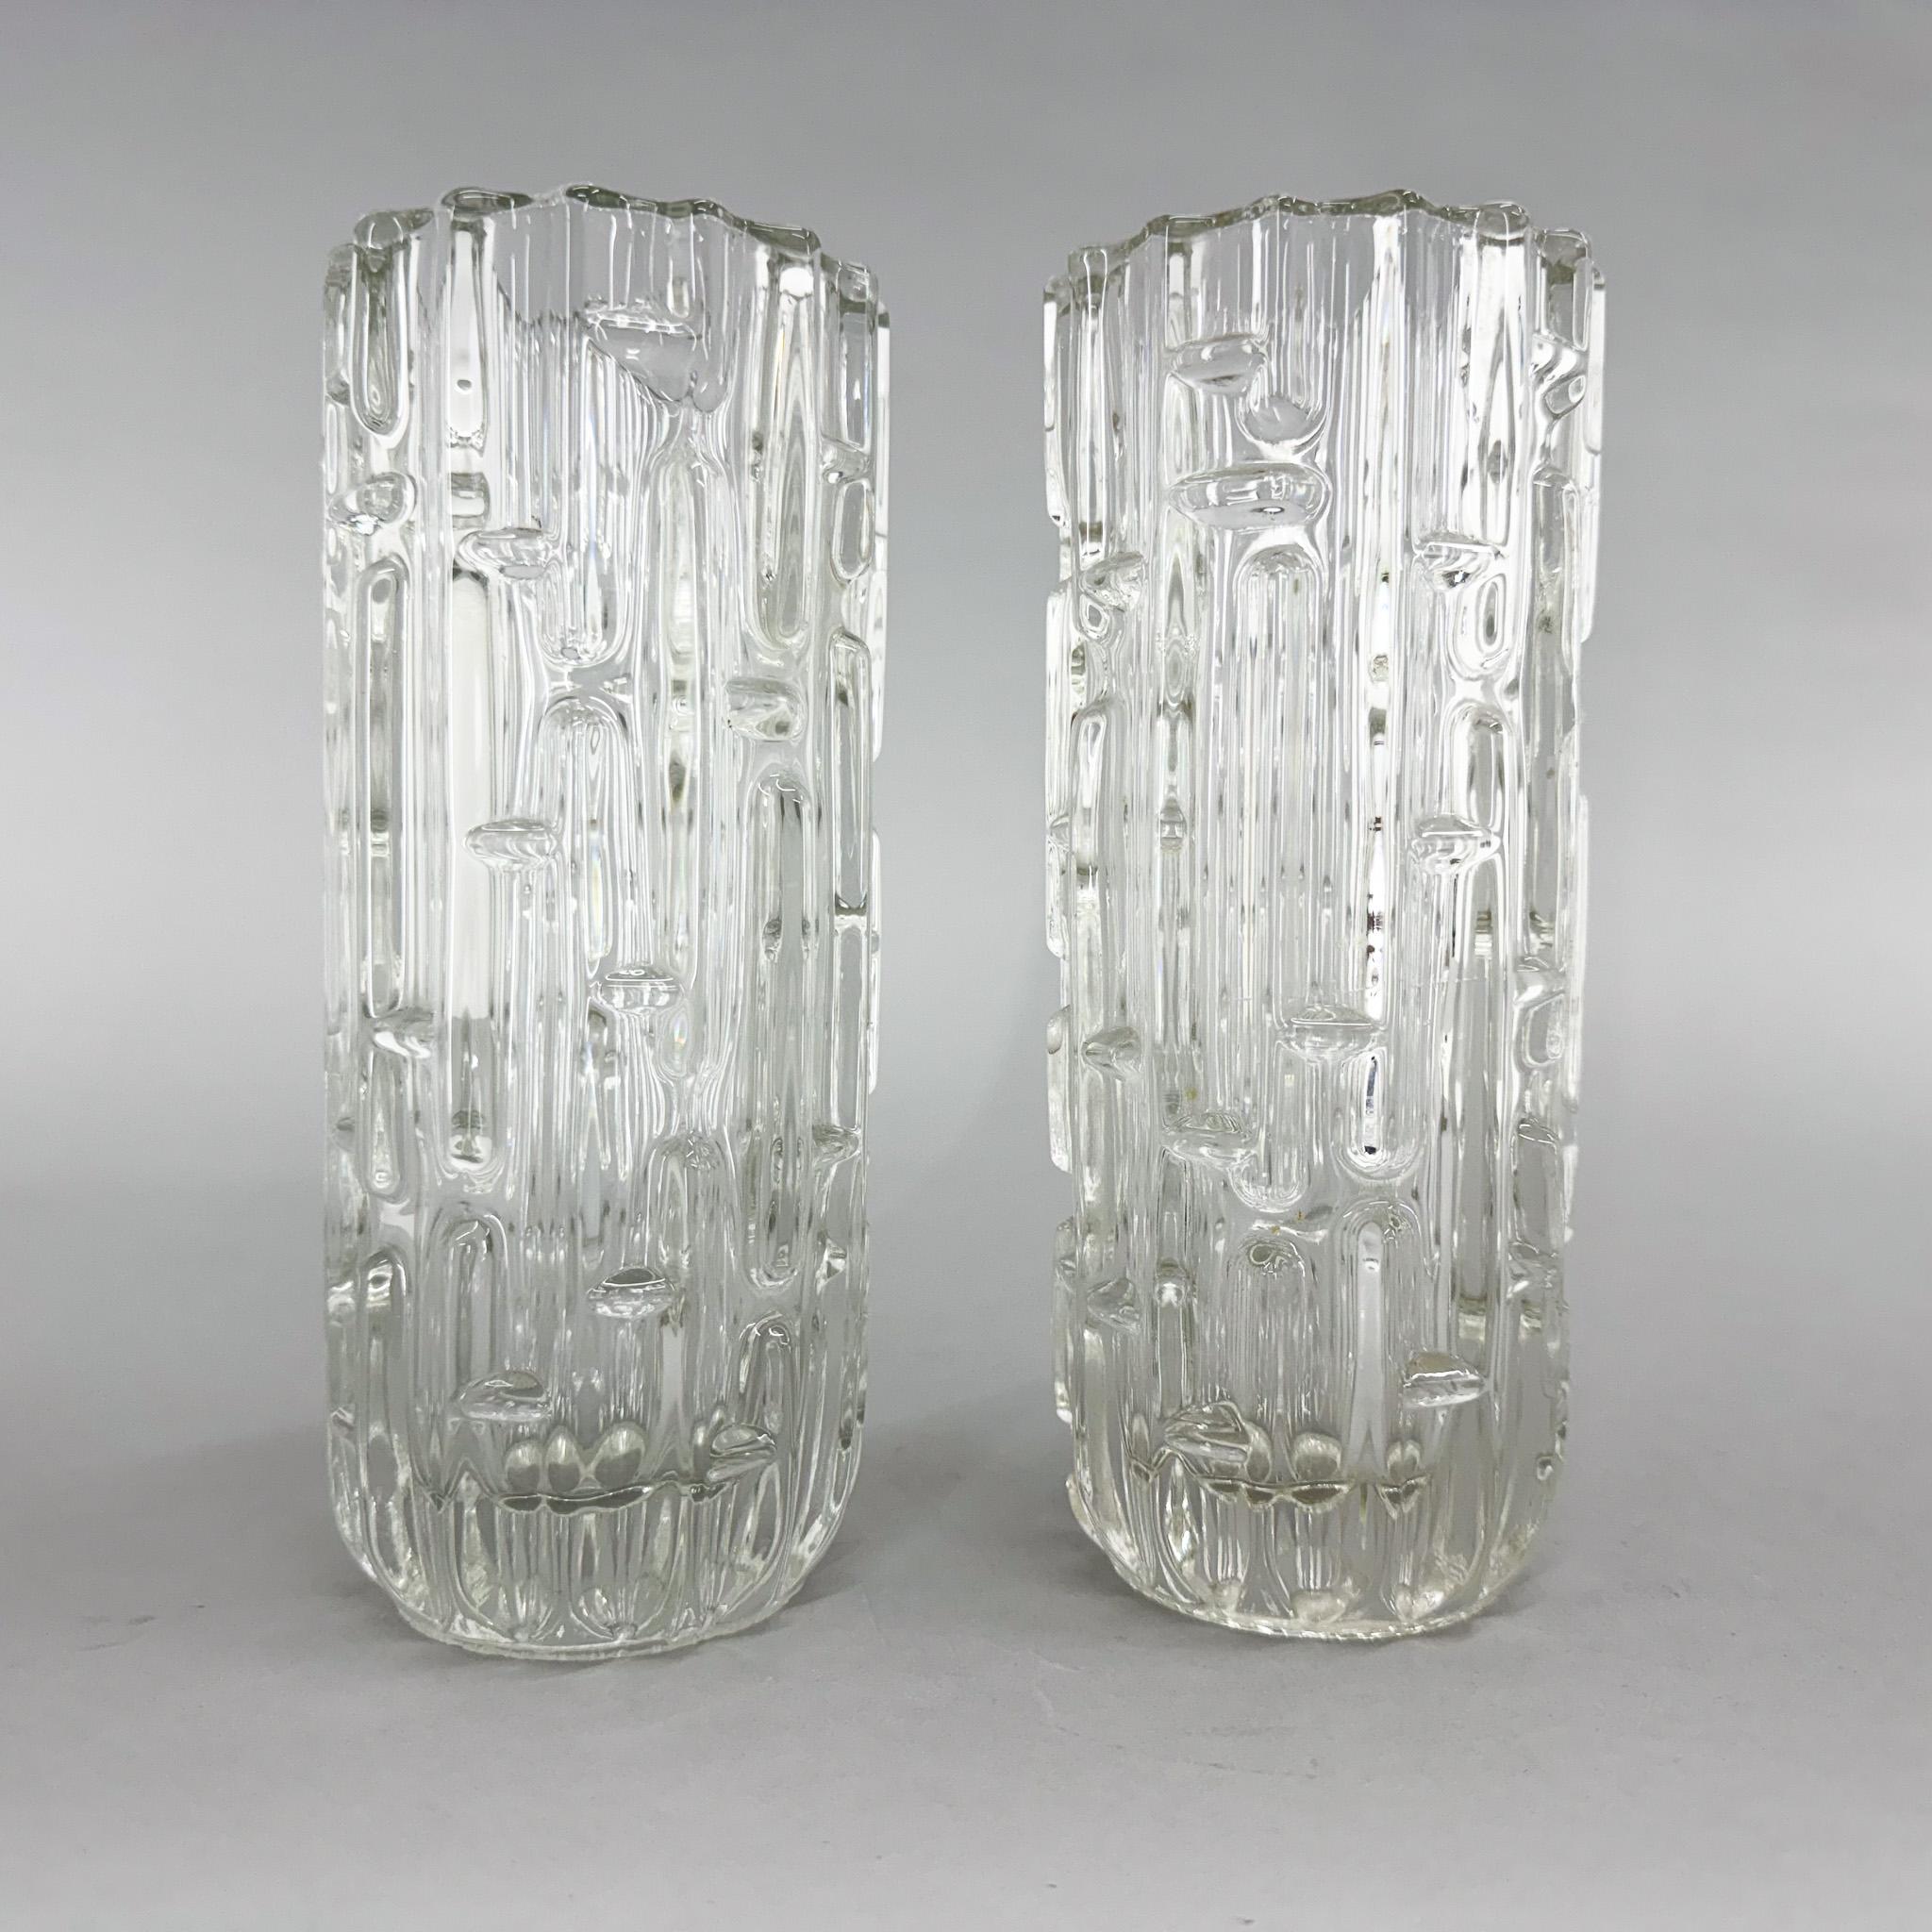 Le vase est en verre transparent densément pressé.
Le vase présente plusieurs protubérances qui évoquent un labyrinthe.
D'après cette décoration, les vases sont appelés Maze.
Les vasew ont été conçus par František Vízner (1936 - 2011) dans la